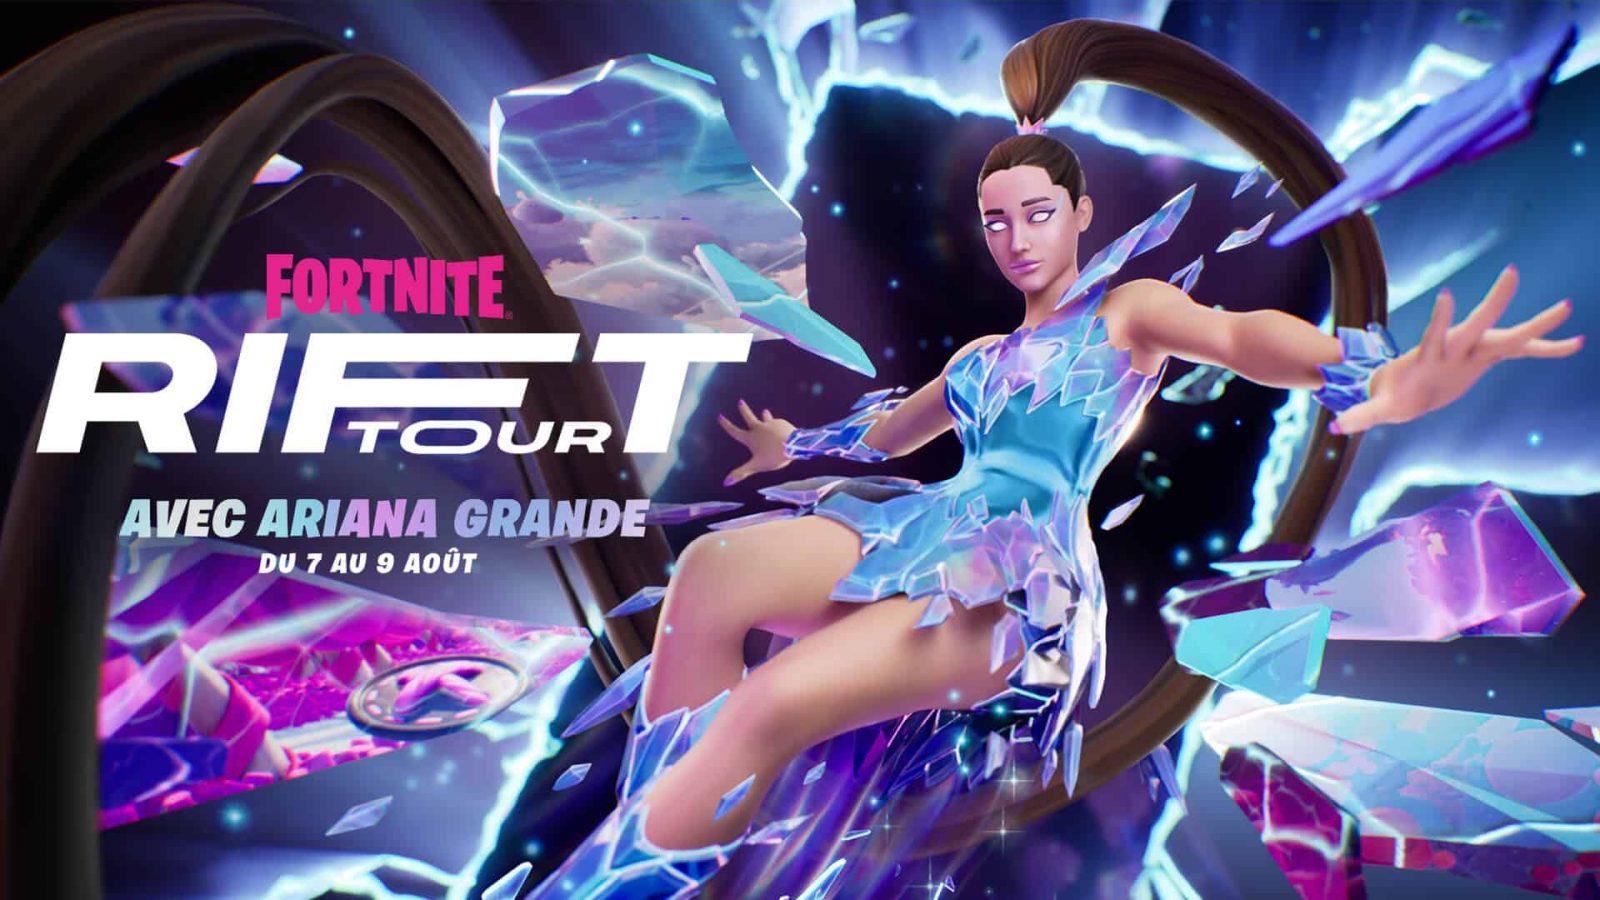 Ariana Grande rift tour Fortnite